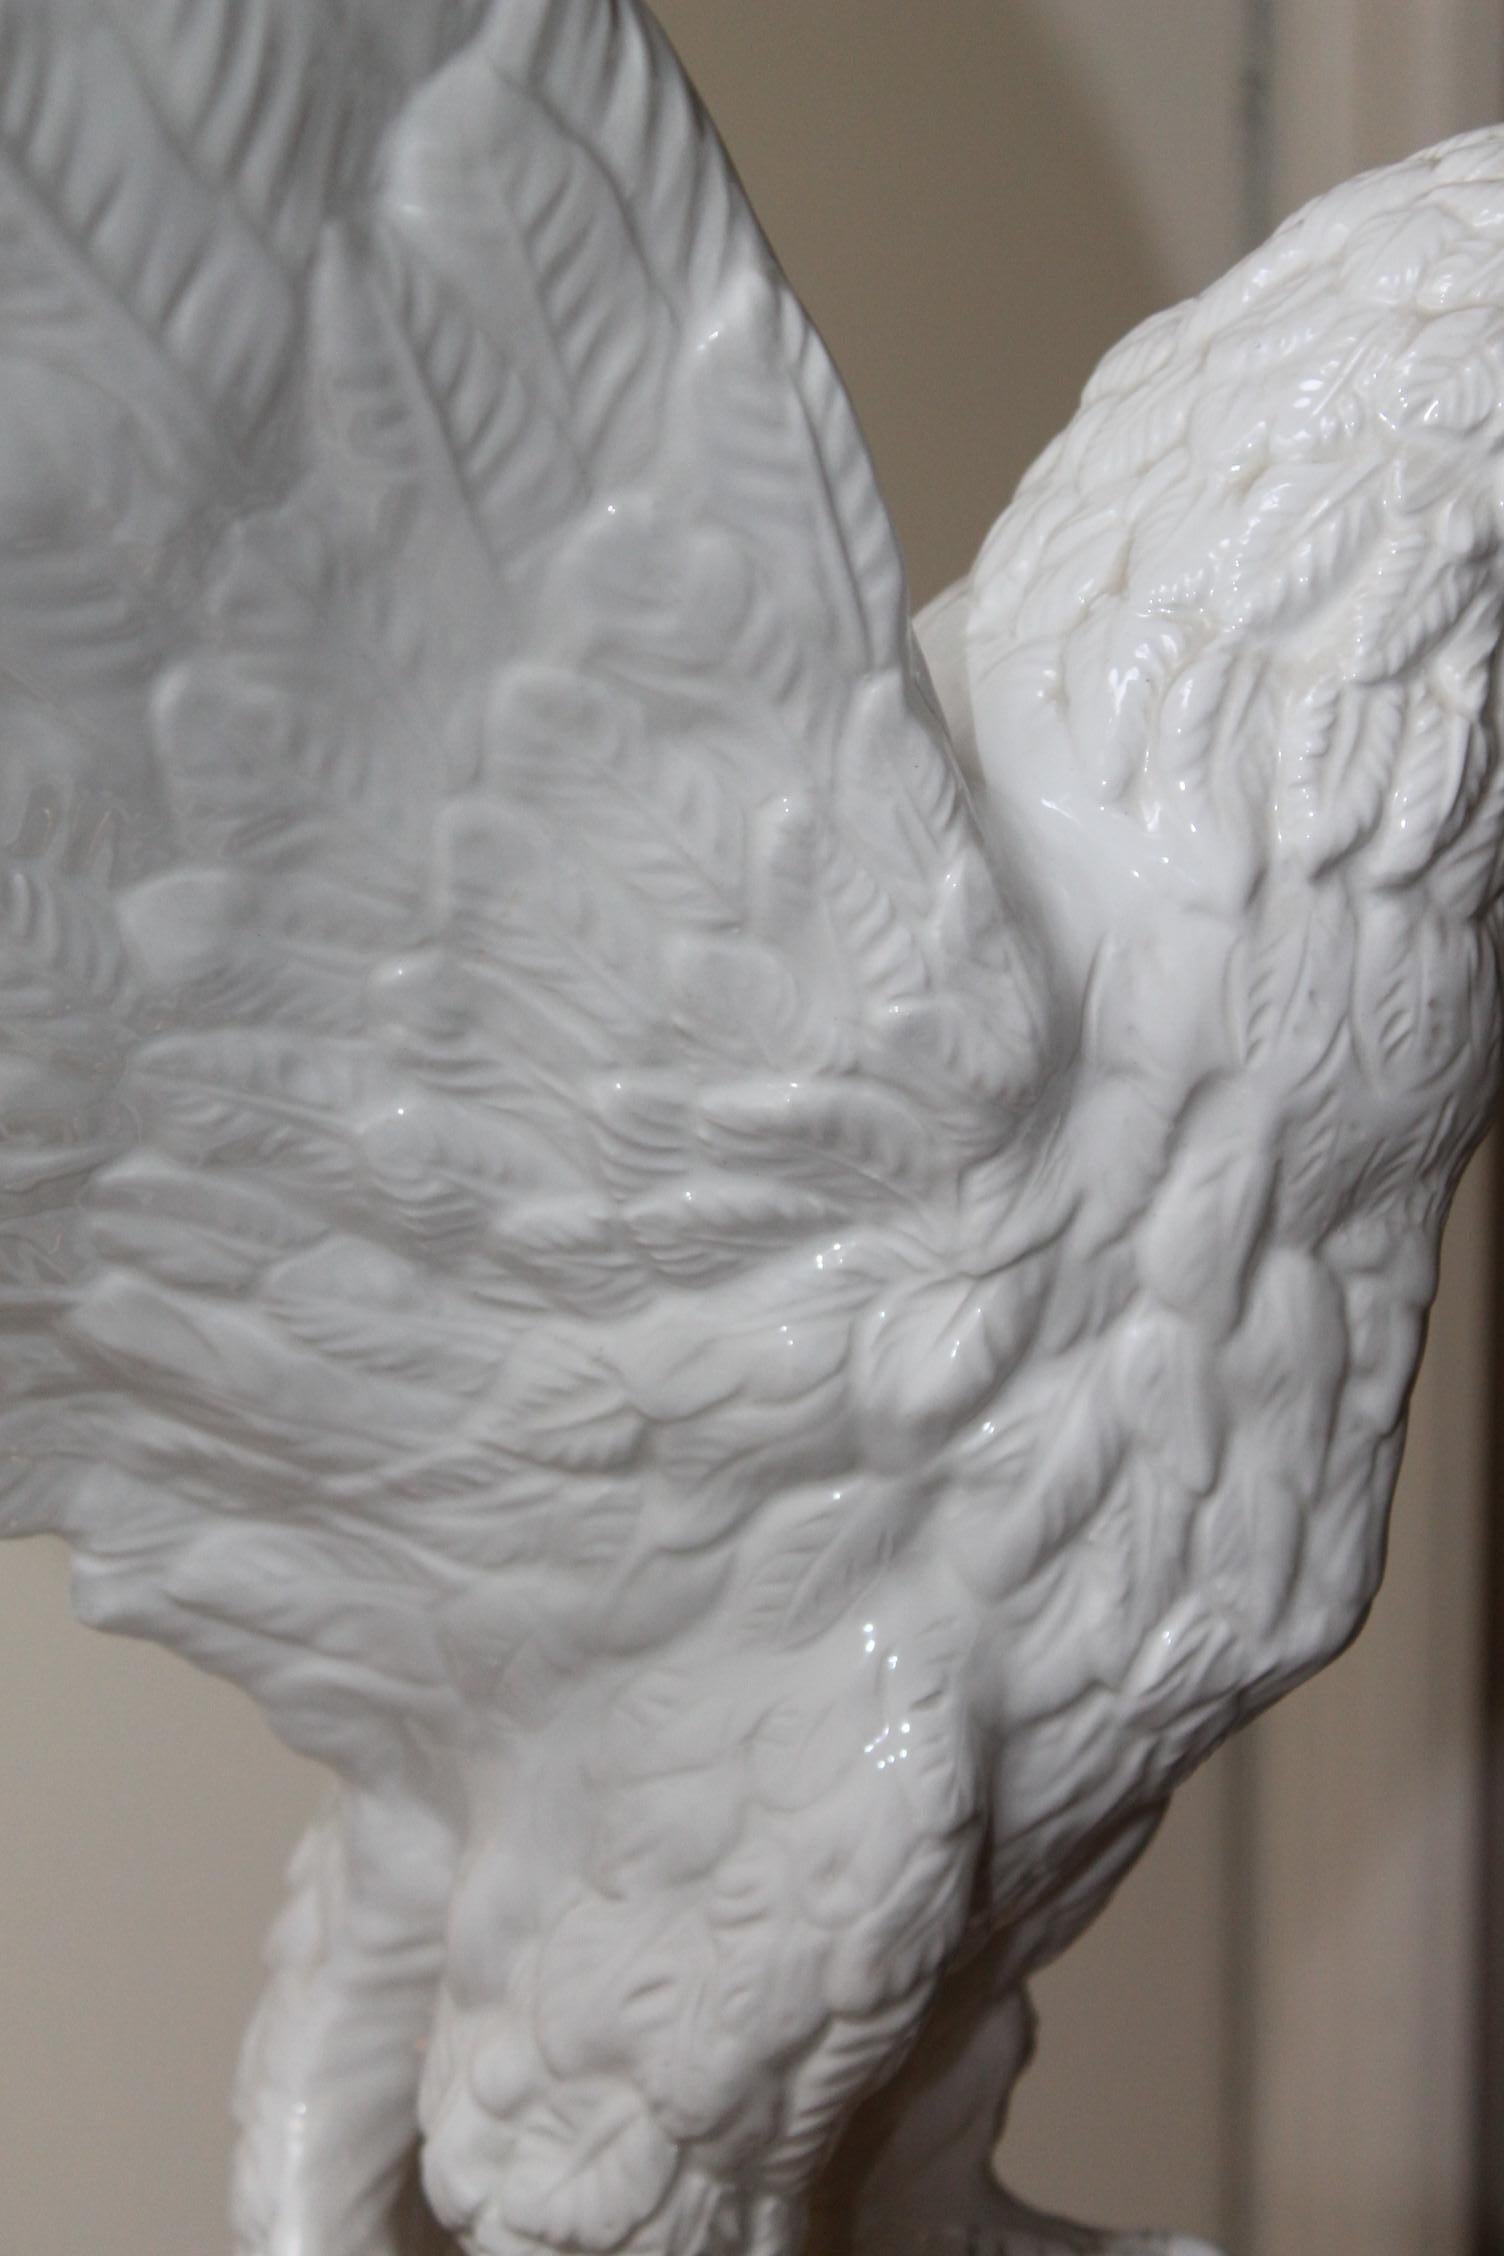 Italian White Ceramic Eagle Statue with Wings Spread, 1970s 1